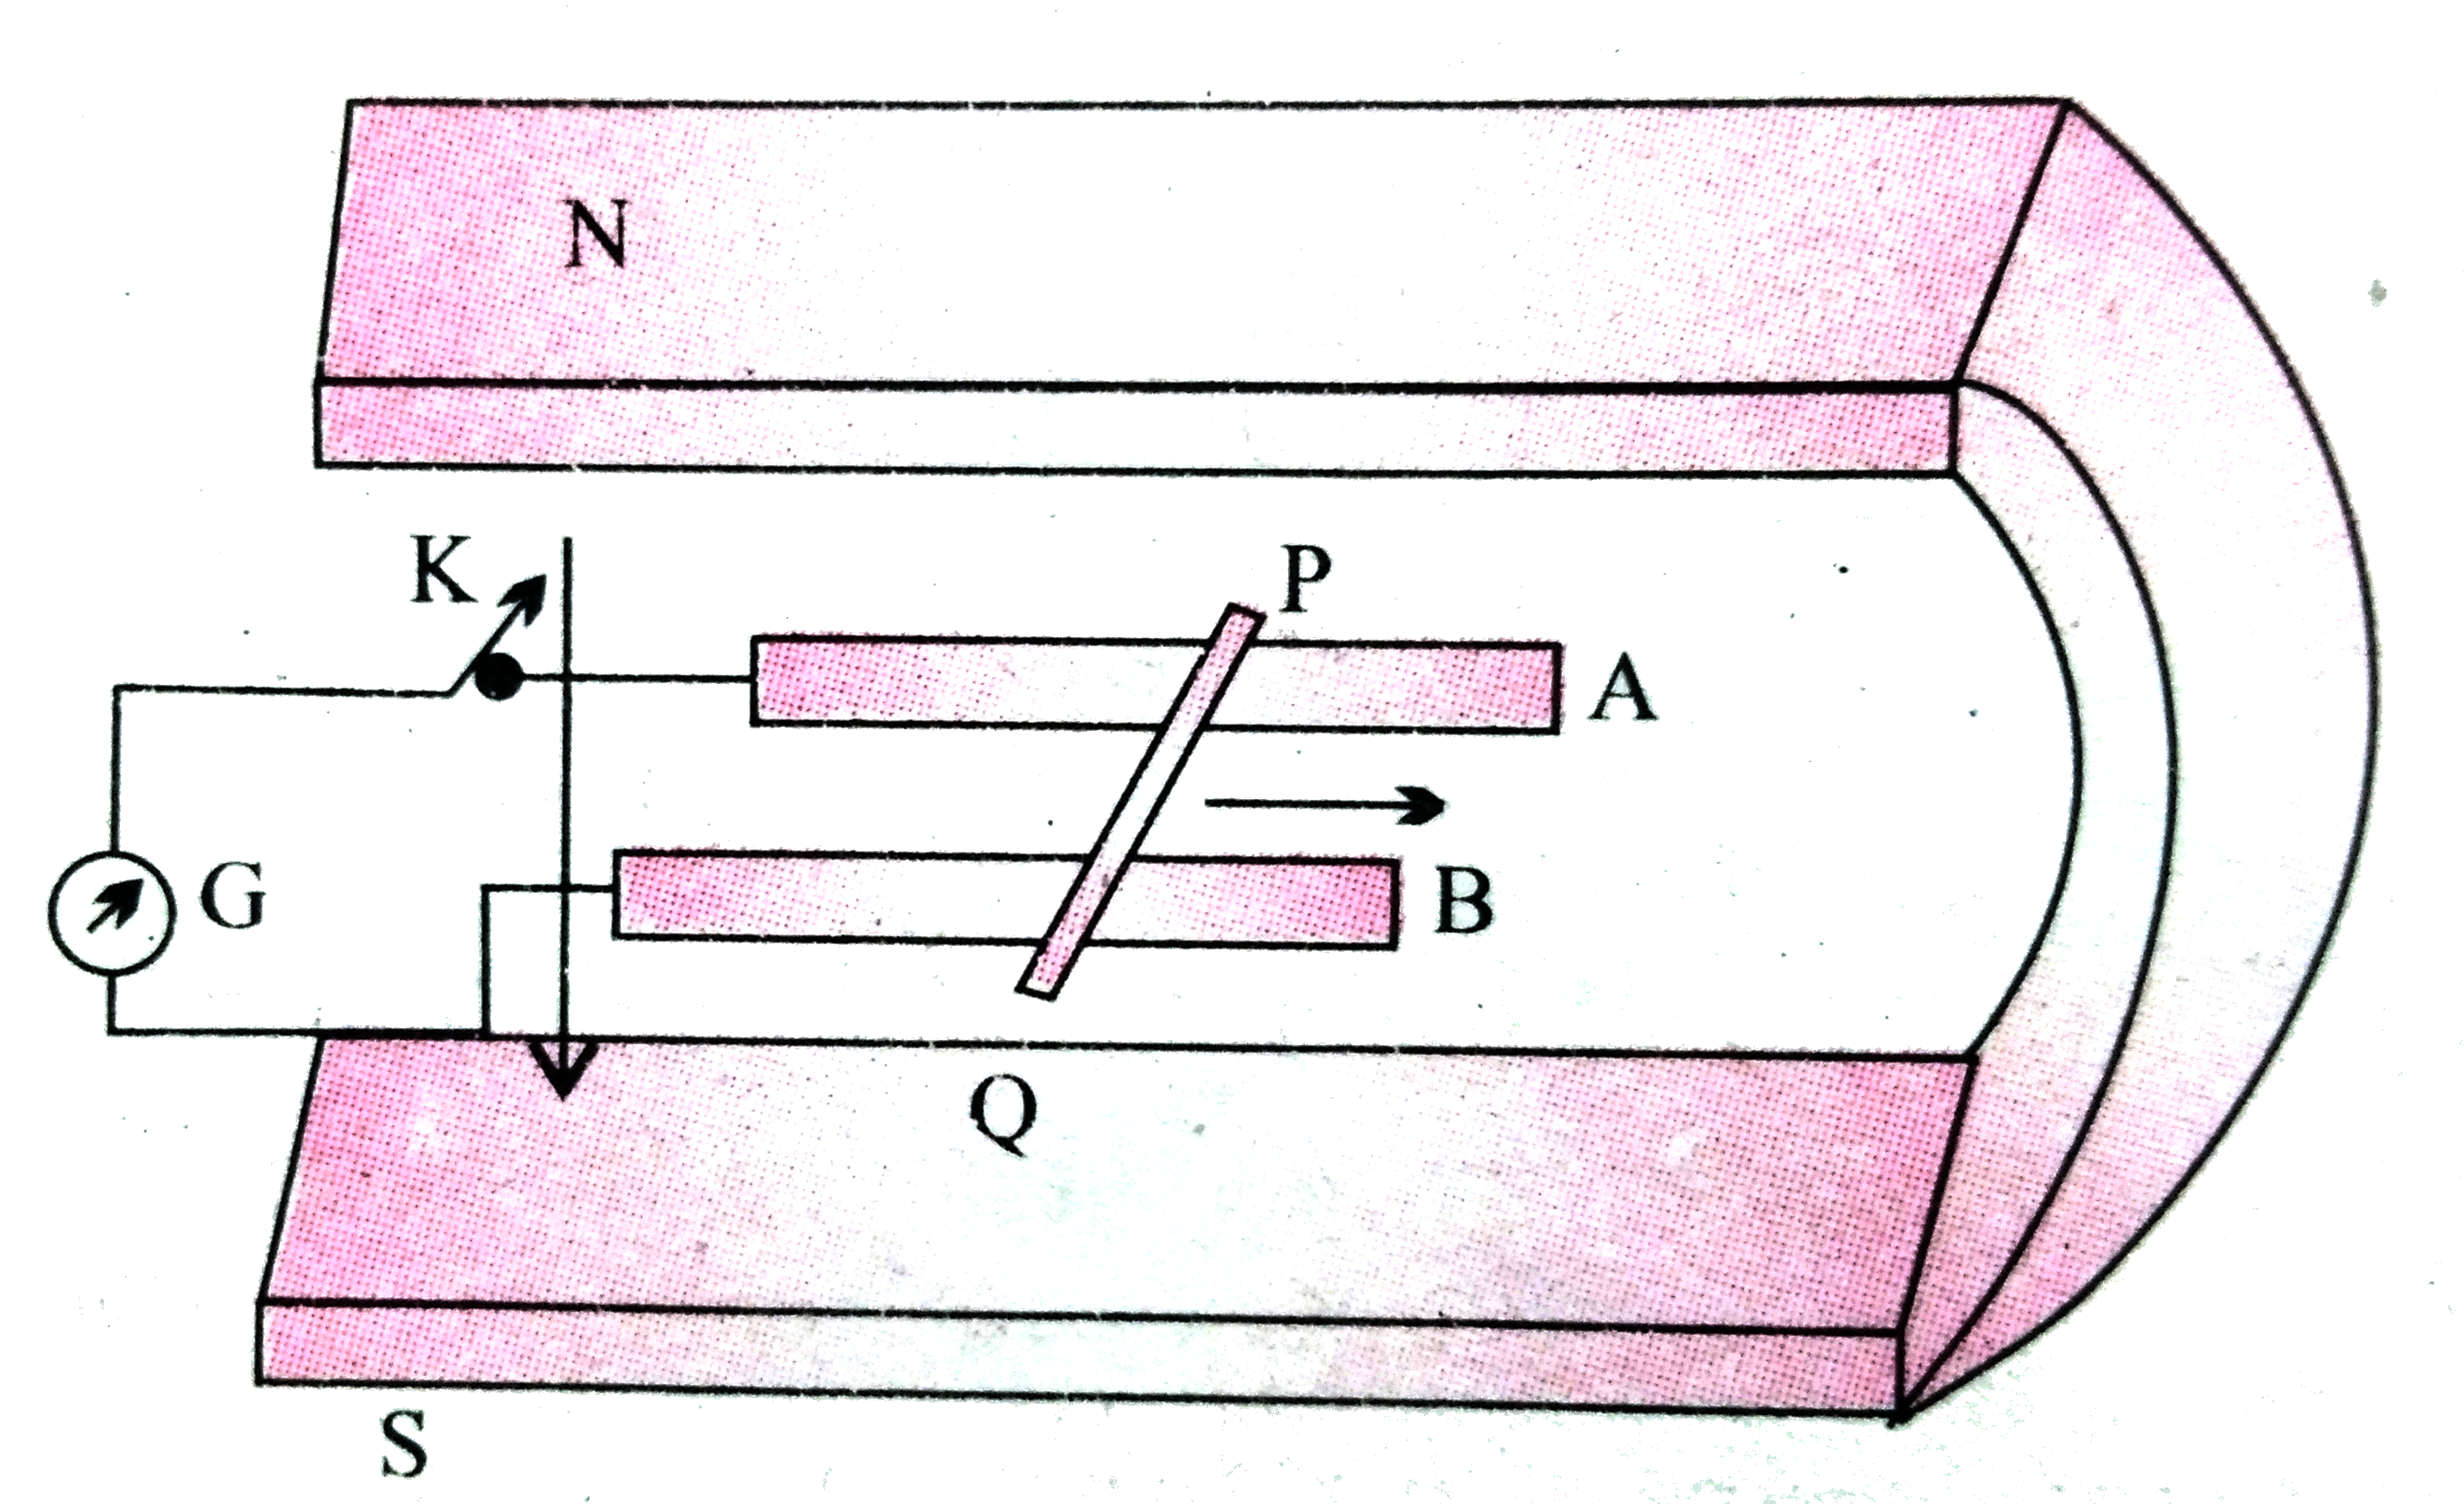 चित्र में एक धातु की  छड़ PQ  को दर्शाया गया है जो पटरियों AB पर रखी है तथा एक स्थायी चुम्बक के ध्रुवो के मध्य स्थित है । पटरियाँ , छड़ एवं चुंबकीय  क्षेत्र परस्पर  अभिलंबवत  दिशाओ में है ।एक गैल्वेनोमीटर ( धारामापी ) G  को पटरियों से एक स्विच K  की सहायता  से संयोजित  किया गया है । छड़ की लम्बाई 15  सेमी , B = 0.50 T  तथा  पटरियों , छड़ धारामापी से बने बंद लूप का प्रतिरोध =  9.0  mOmega   है । क्षेत्र  को एकसमान  मान ले ।    कुंजी बंद होने की स्थिति में छड़ को उसी चाल    (12